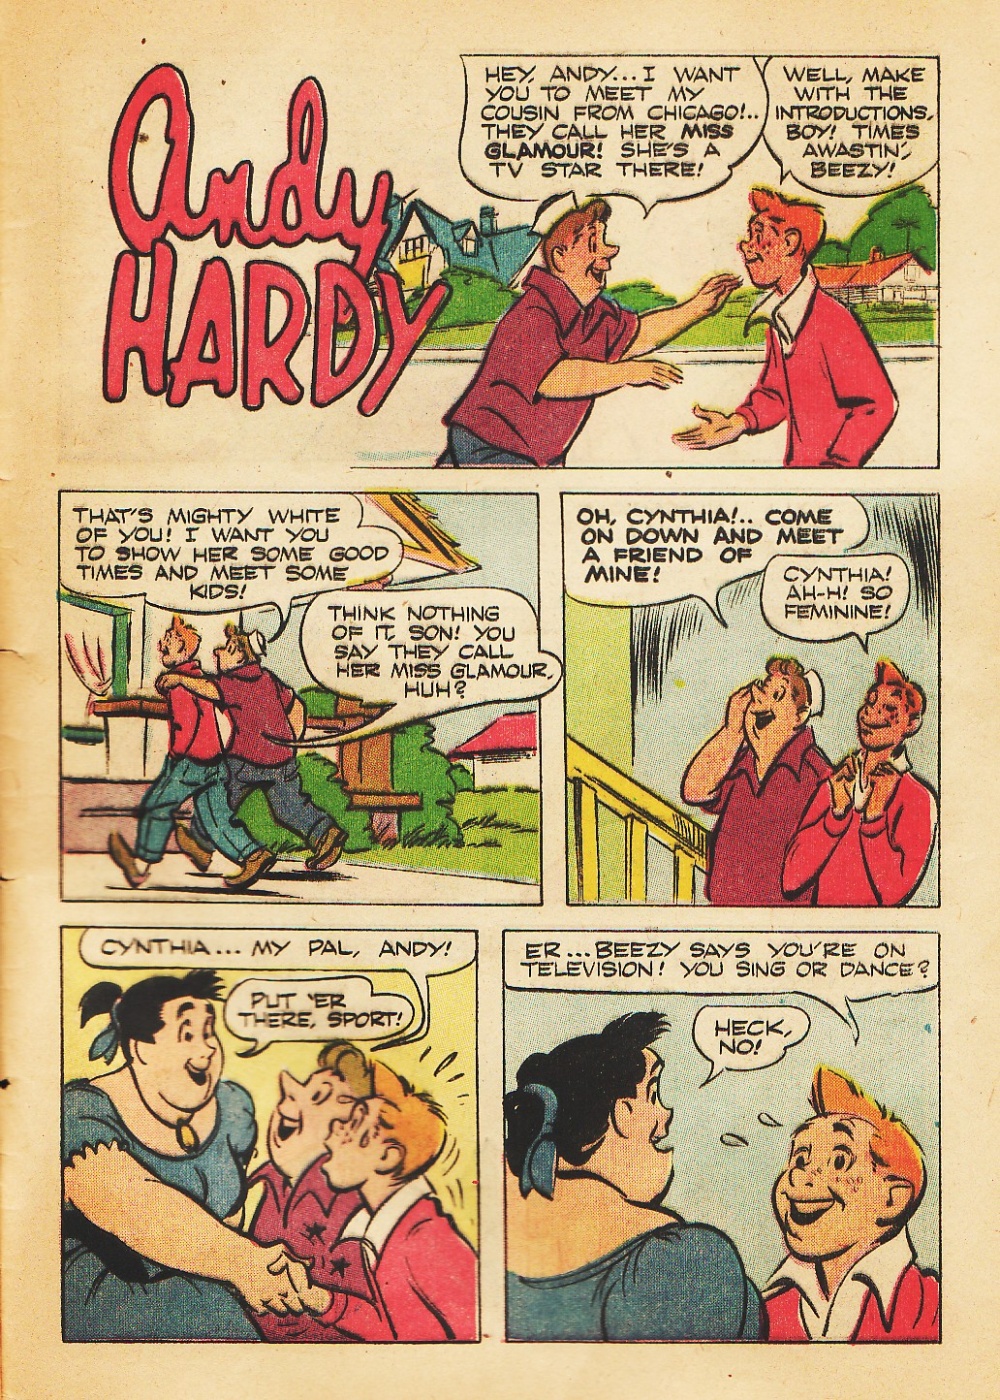 Andy-Hardy-Comic-Strips (b) (33)